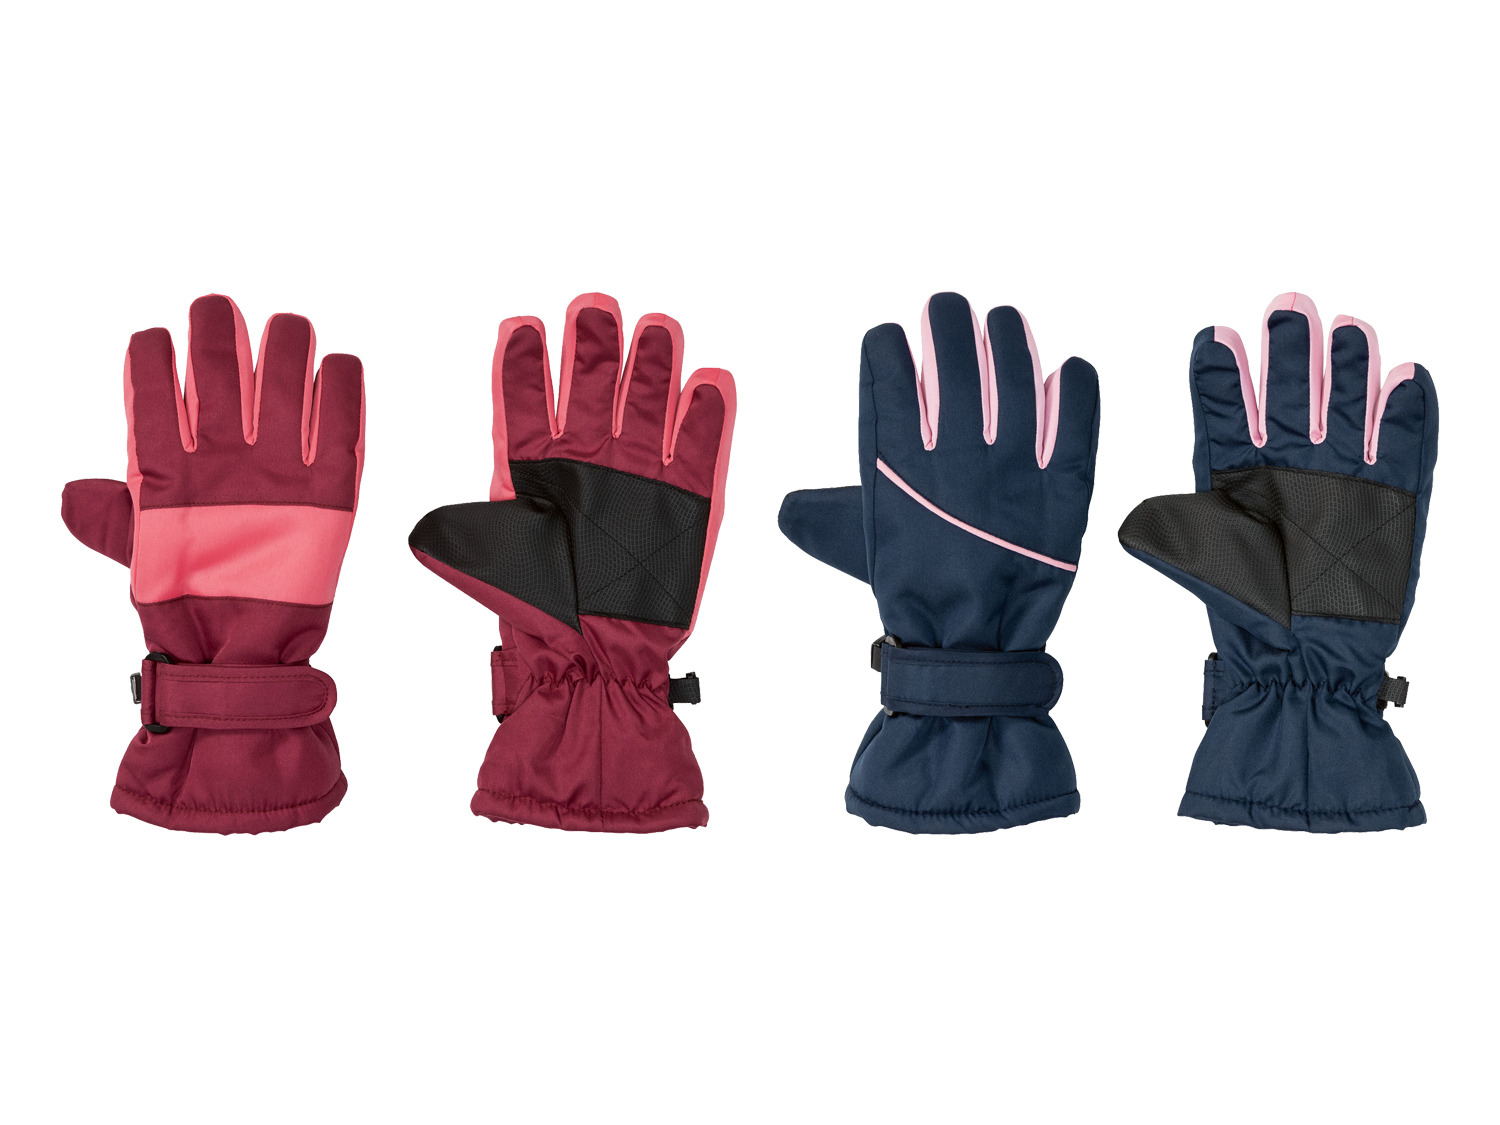 handschoenen kopen? | LIDL